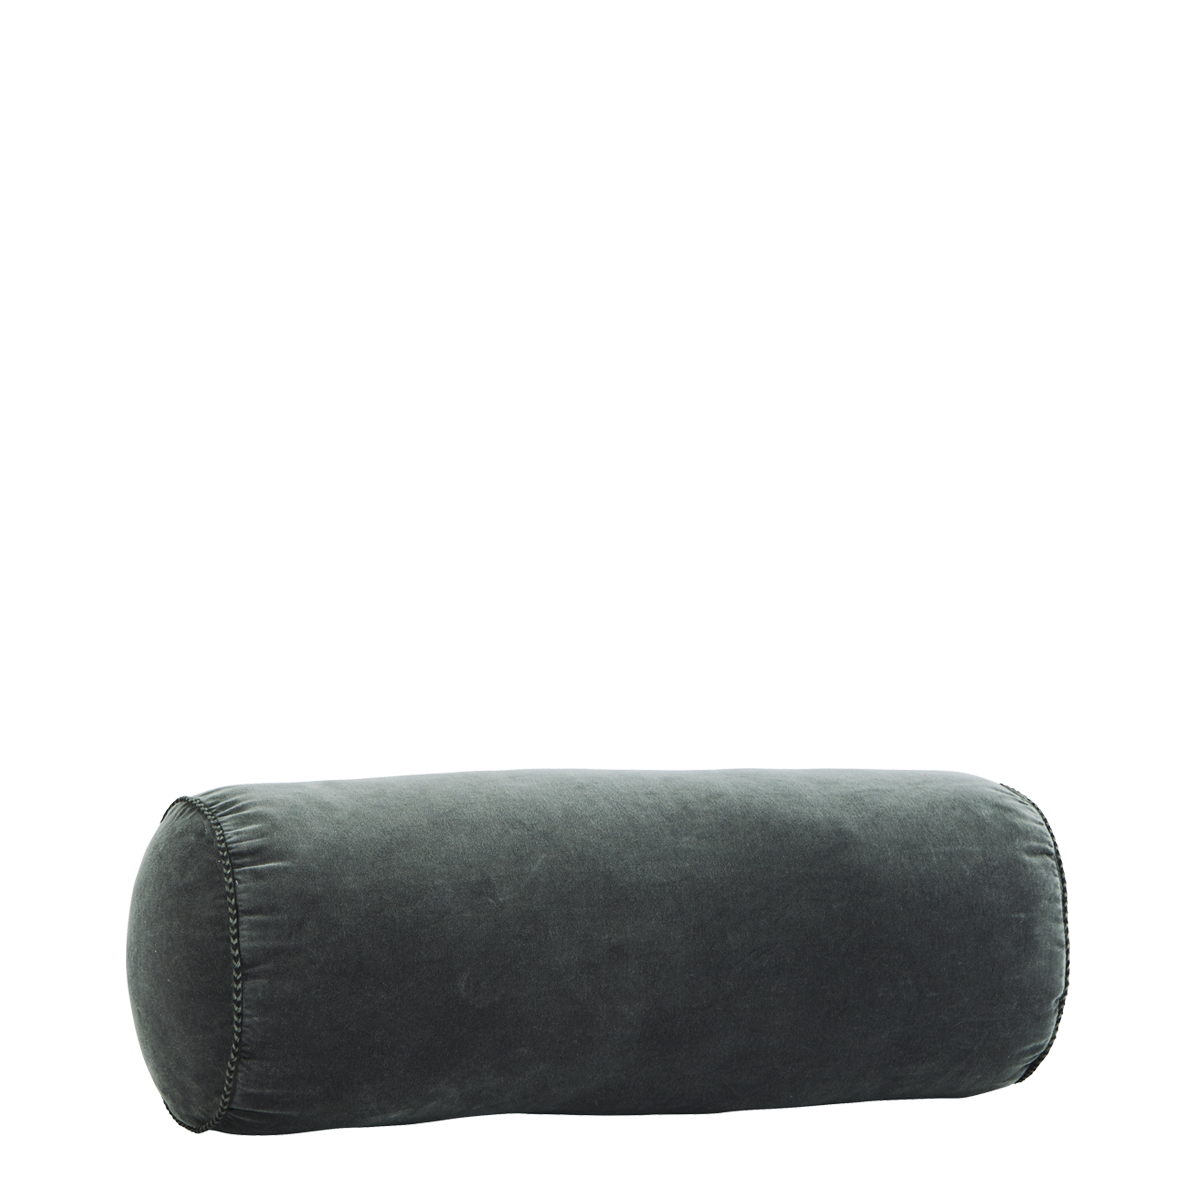 Velvet bolster cushion